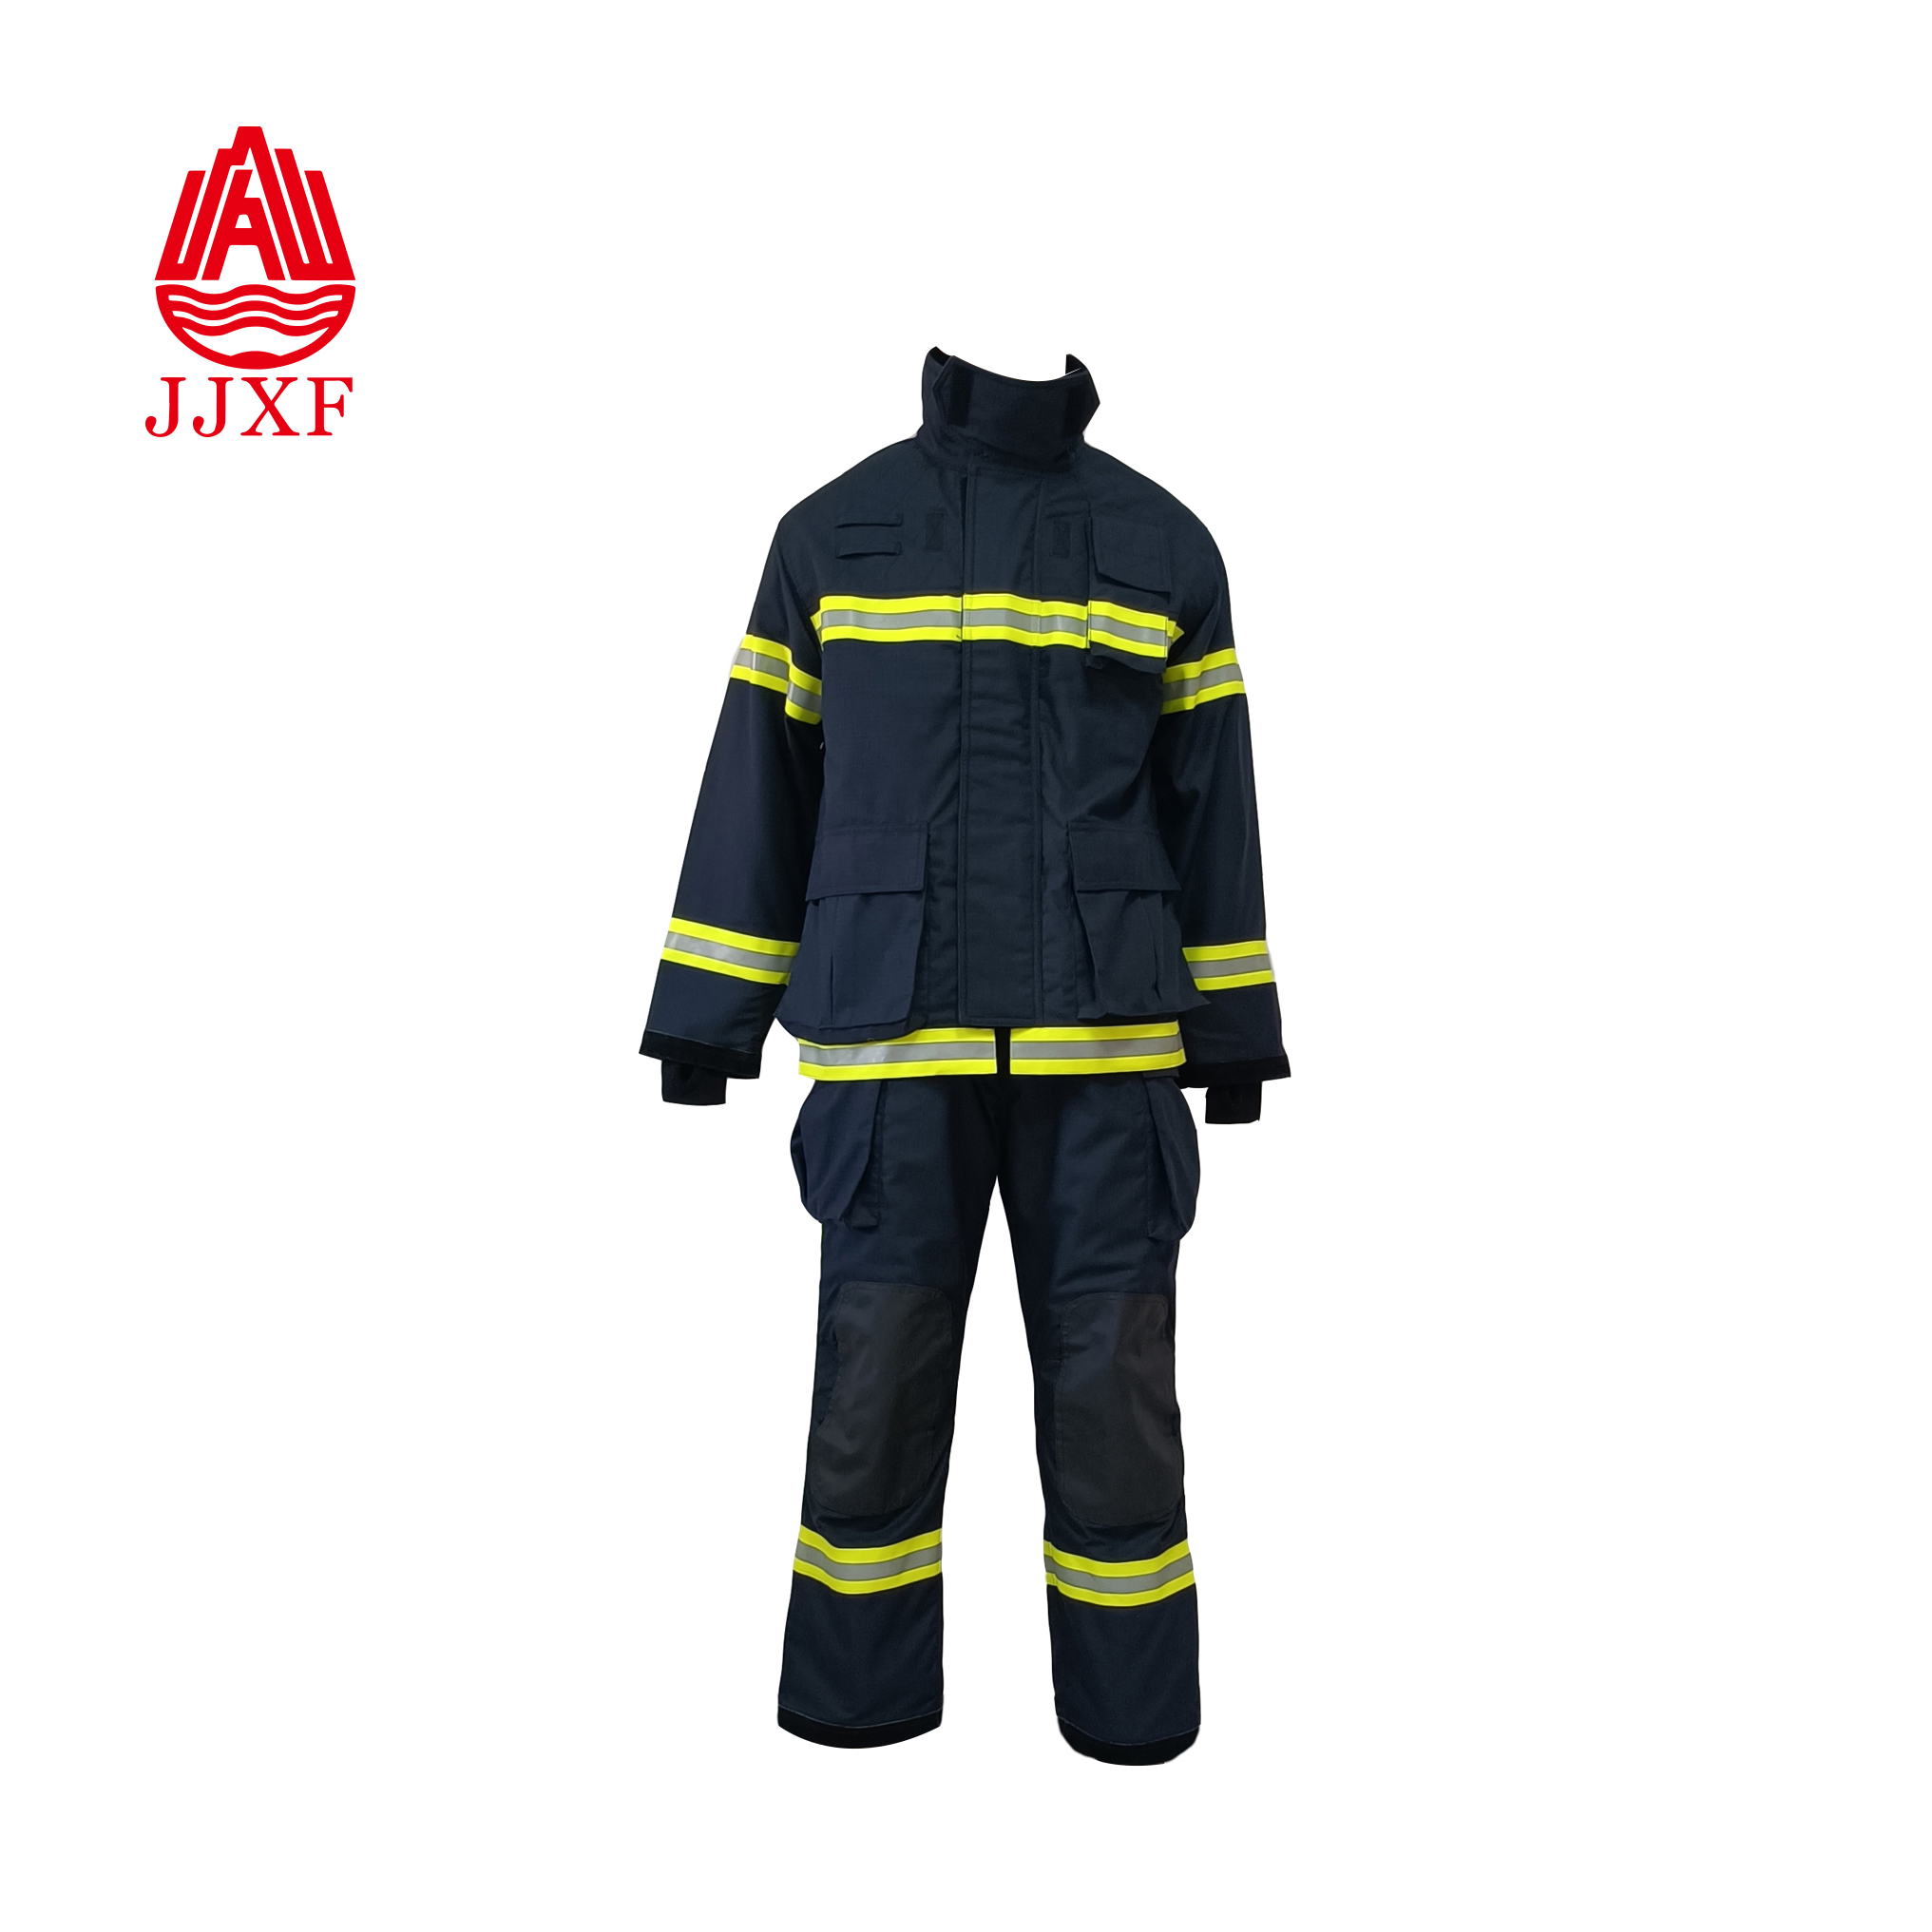  Fireman Suit EN469 Certified fire uniforms